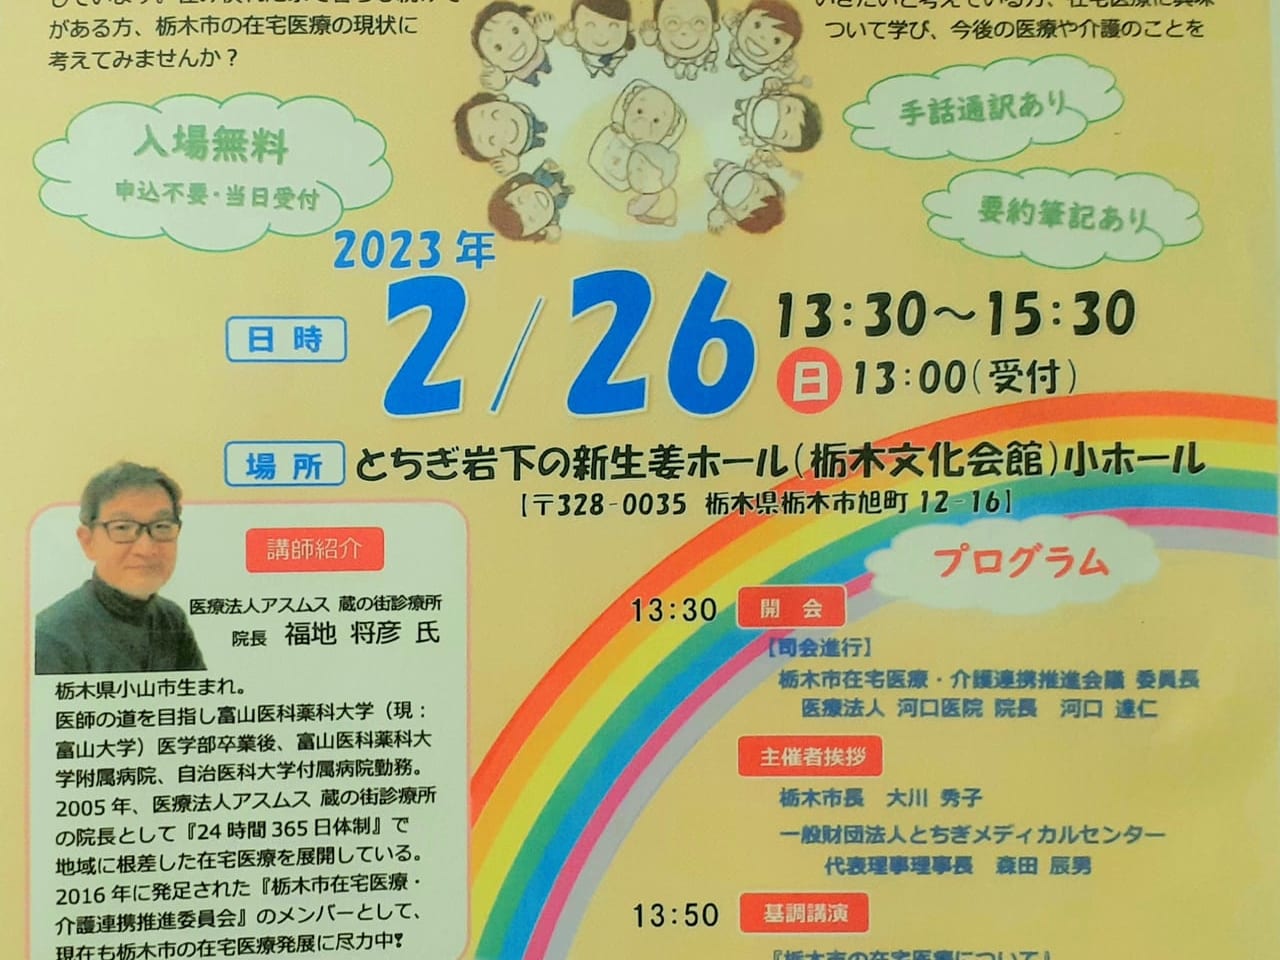 栃木市の在宅医療についてパンフレット